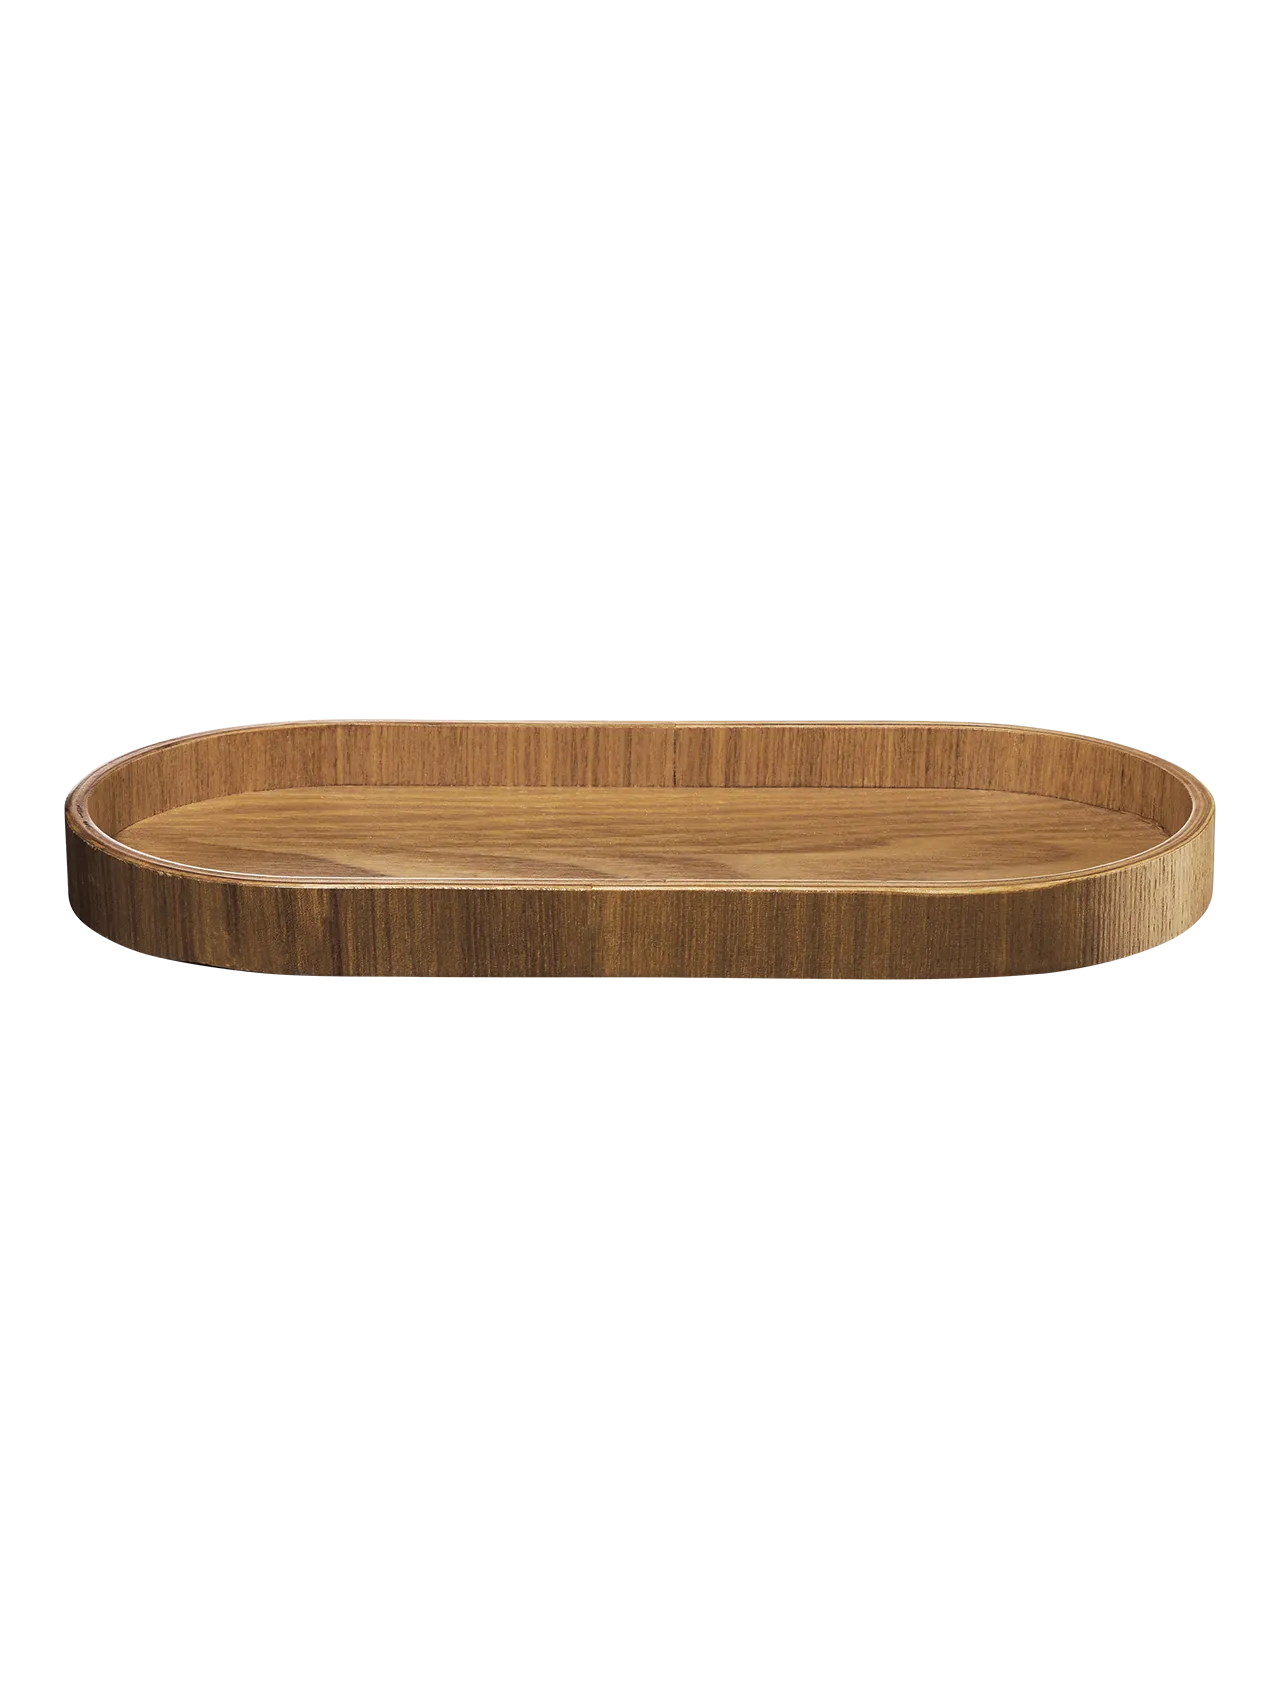 ASA wooden tray, oval